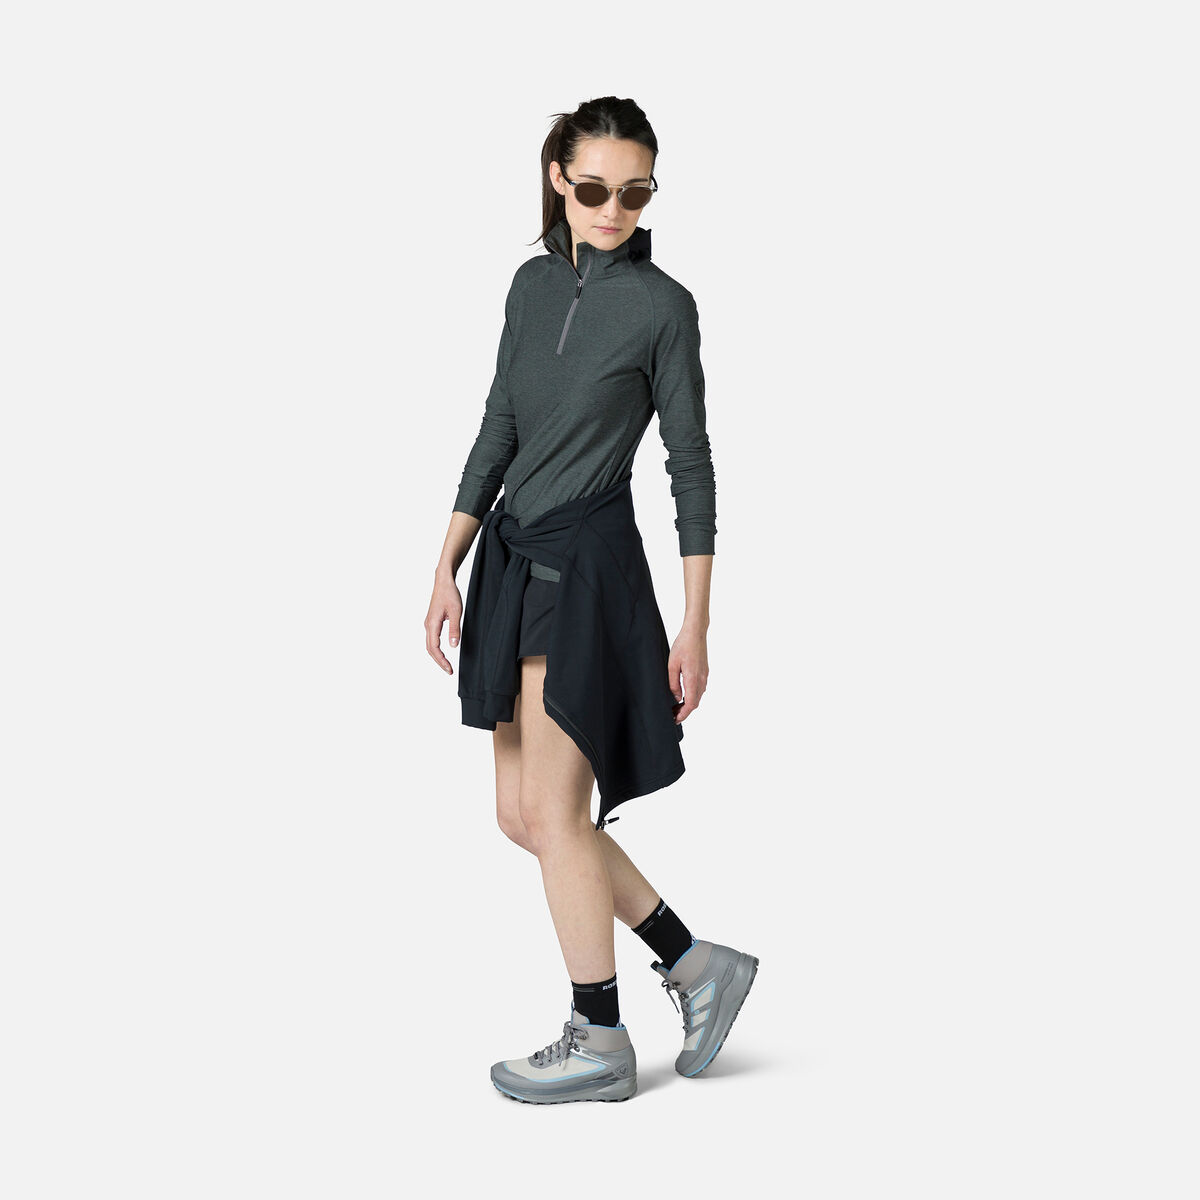 Women's Melange Half-Zip Hiking Pullover